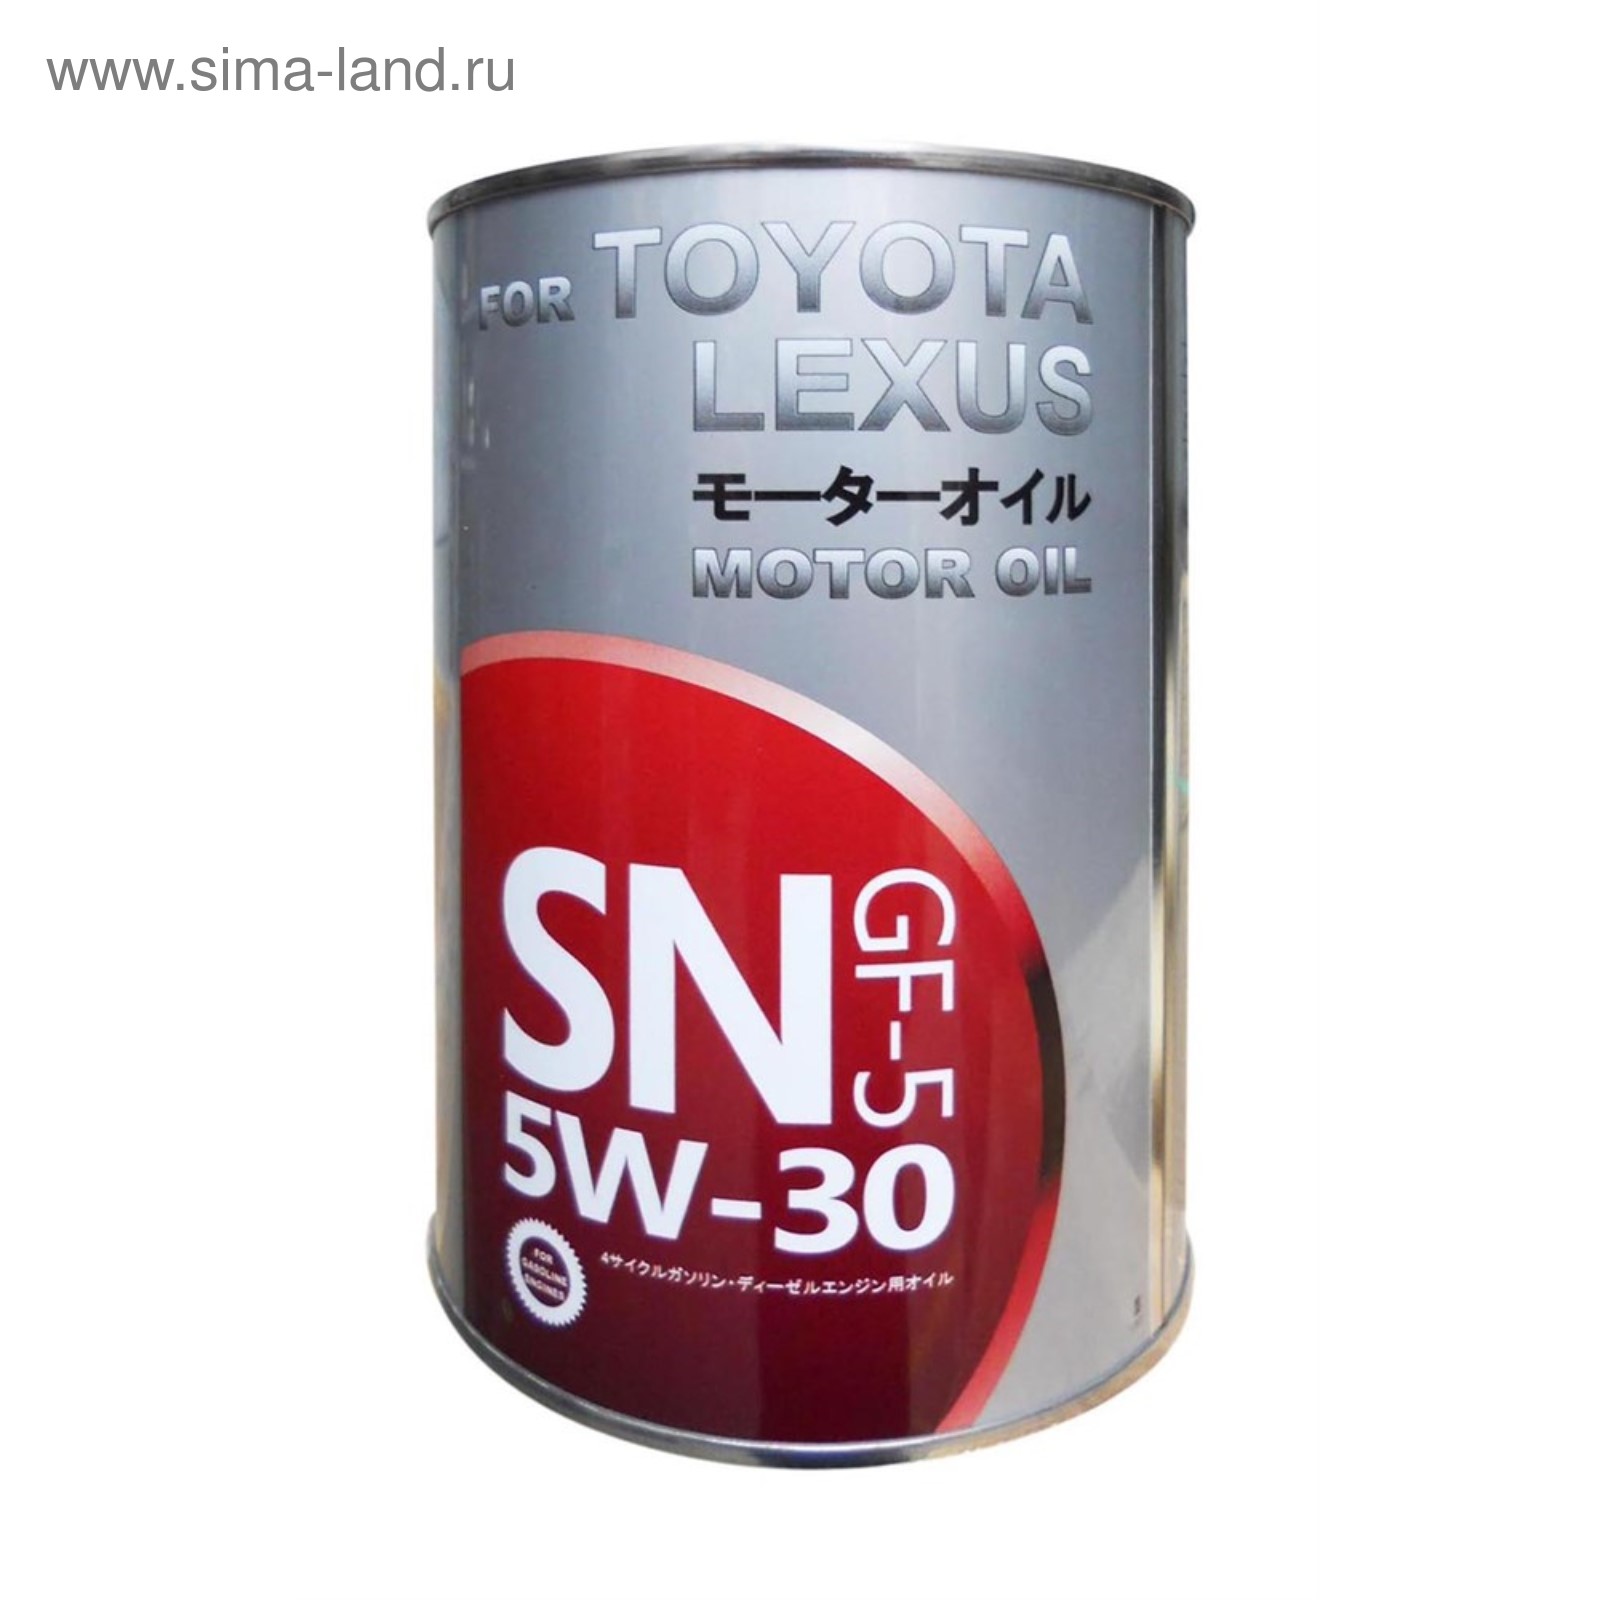 5w30 1л купить. Toyota SN 5w-30. Fanfaro Toyota 5w30. Toyota 5w-30 SN gf-5. Toyota Motor Oil SN gf-5 5w-30.